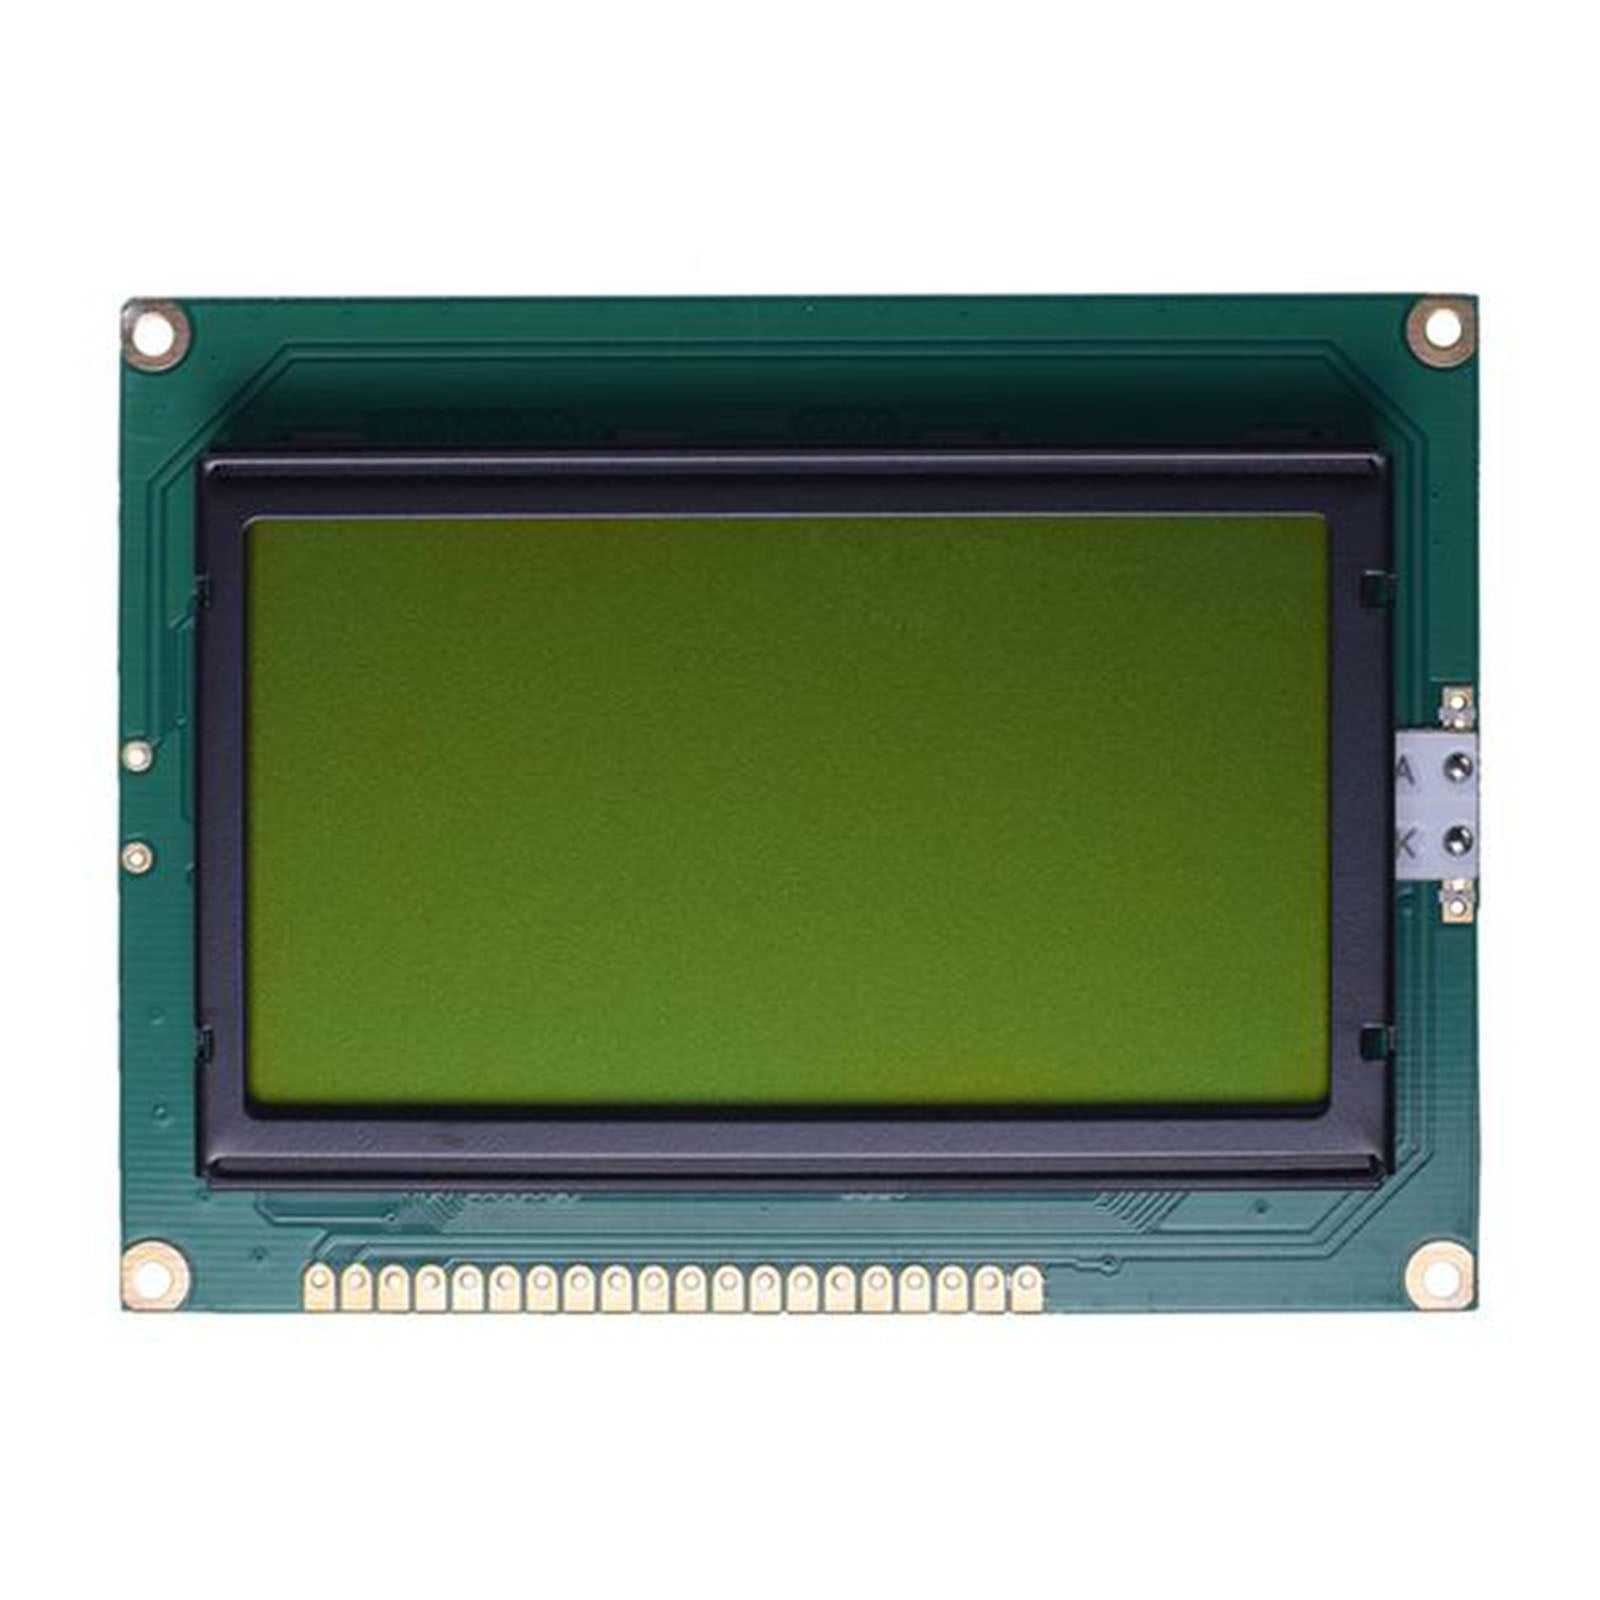 DisplayModule 3.24" 128x64 Large Graphic LCD - MCU